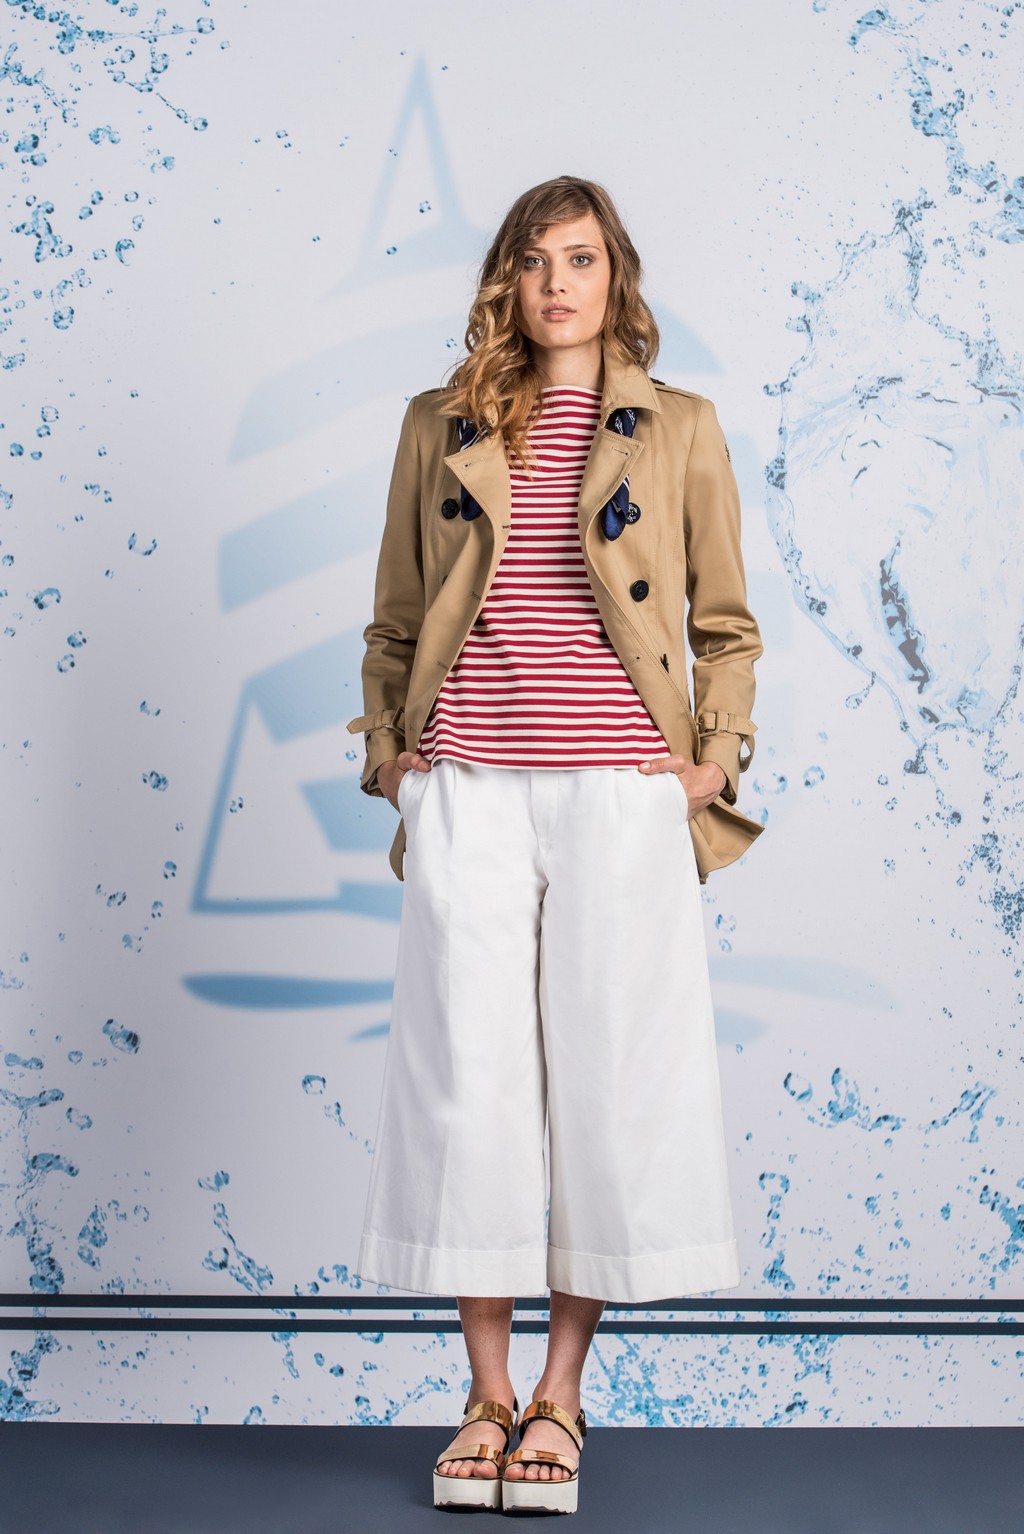 Tendenze moda primavera estate 2016: Marina Yachting presenta la collezione donna